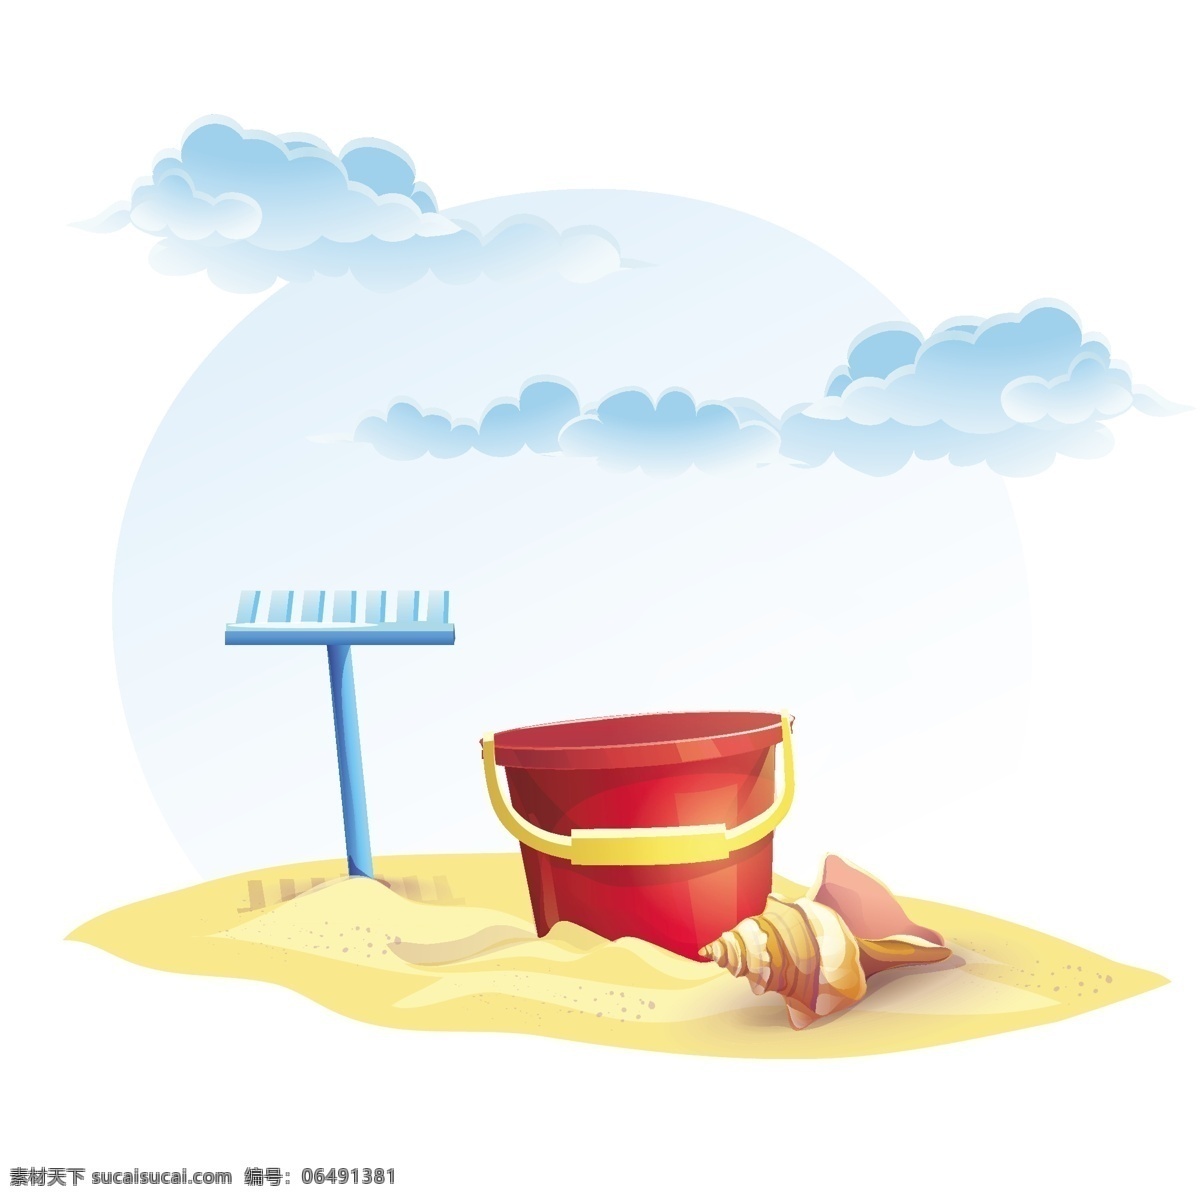 沙滩 上 水桶 沙滩上的水桶 夏日主题 耙 海螺 云朵 白云 手提桶 夏季素材 summer 其他类别 环境家居